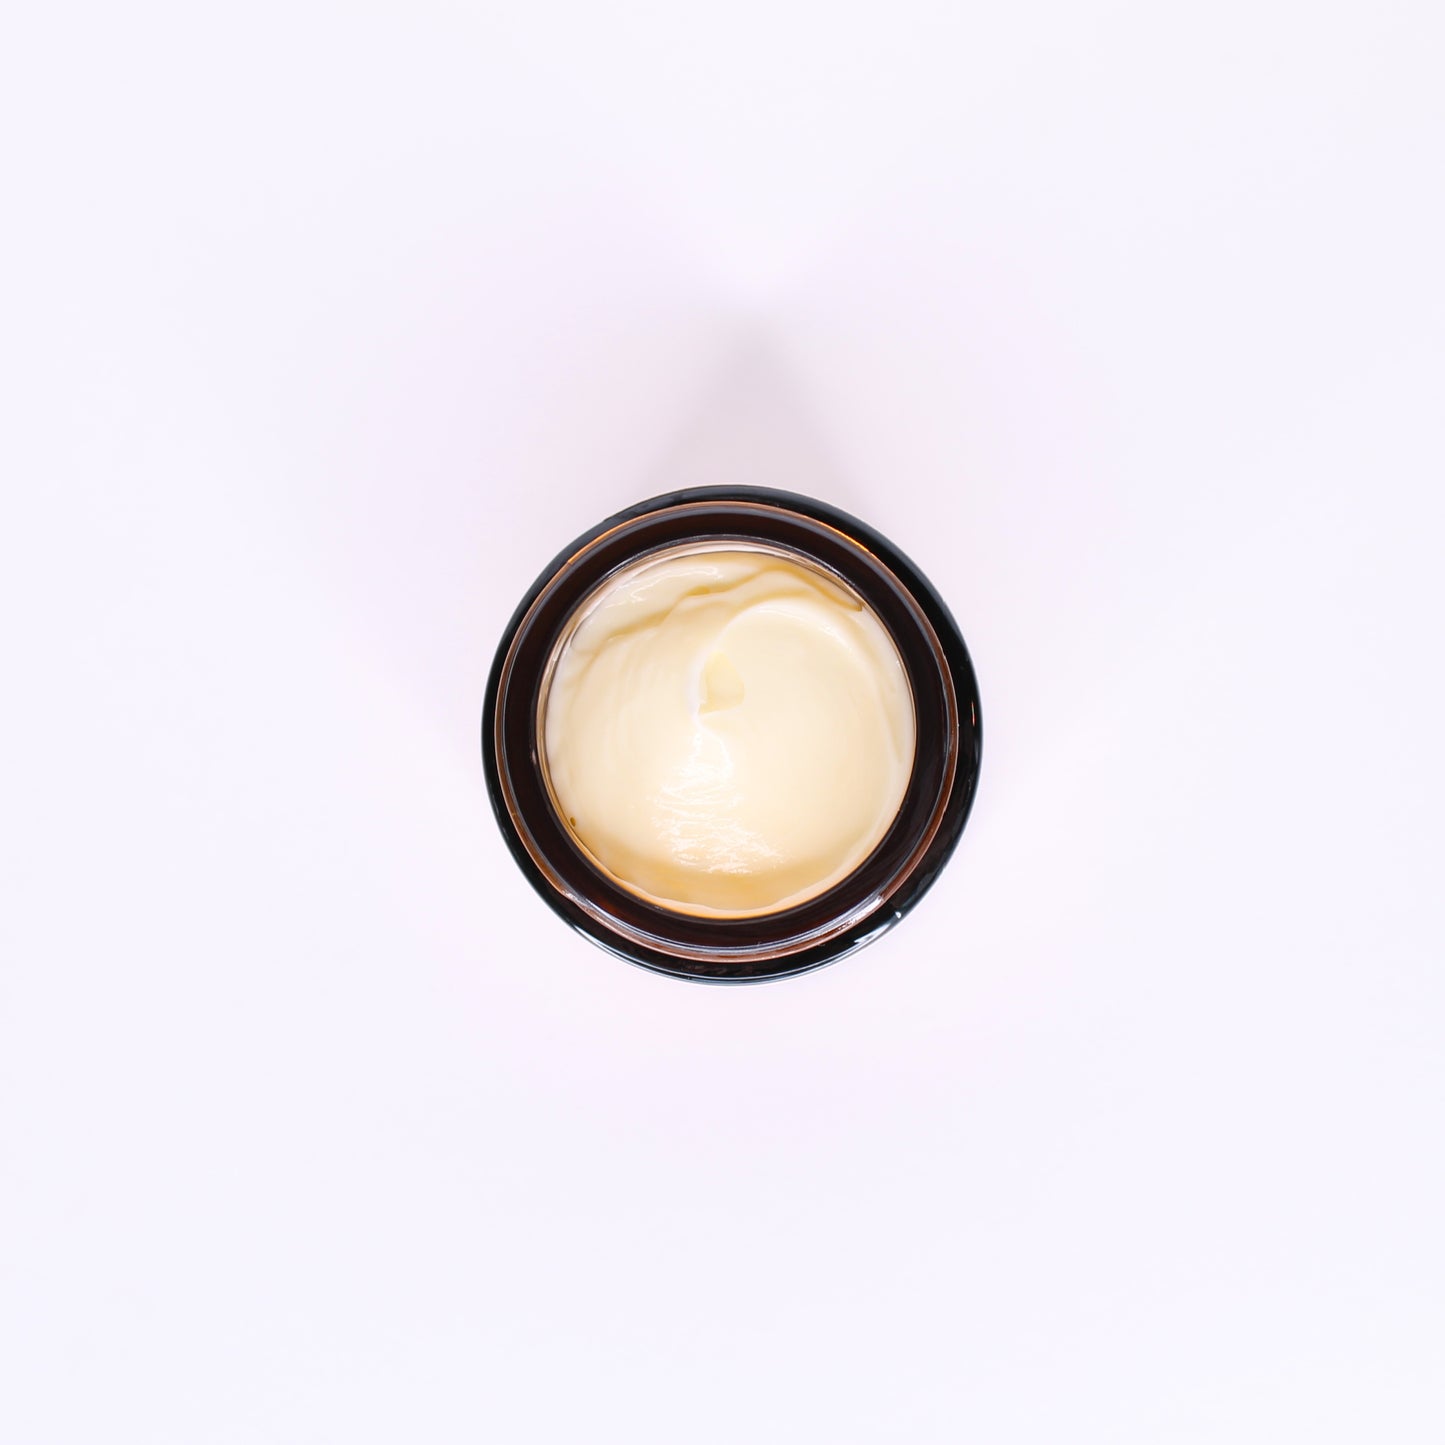 Ceramide Veil facial moisturizer, top view, light buttery yellow cream